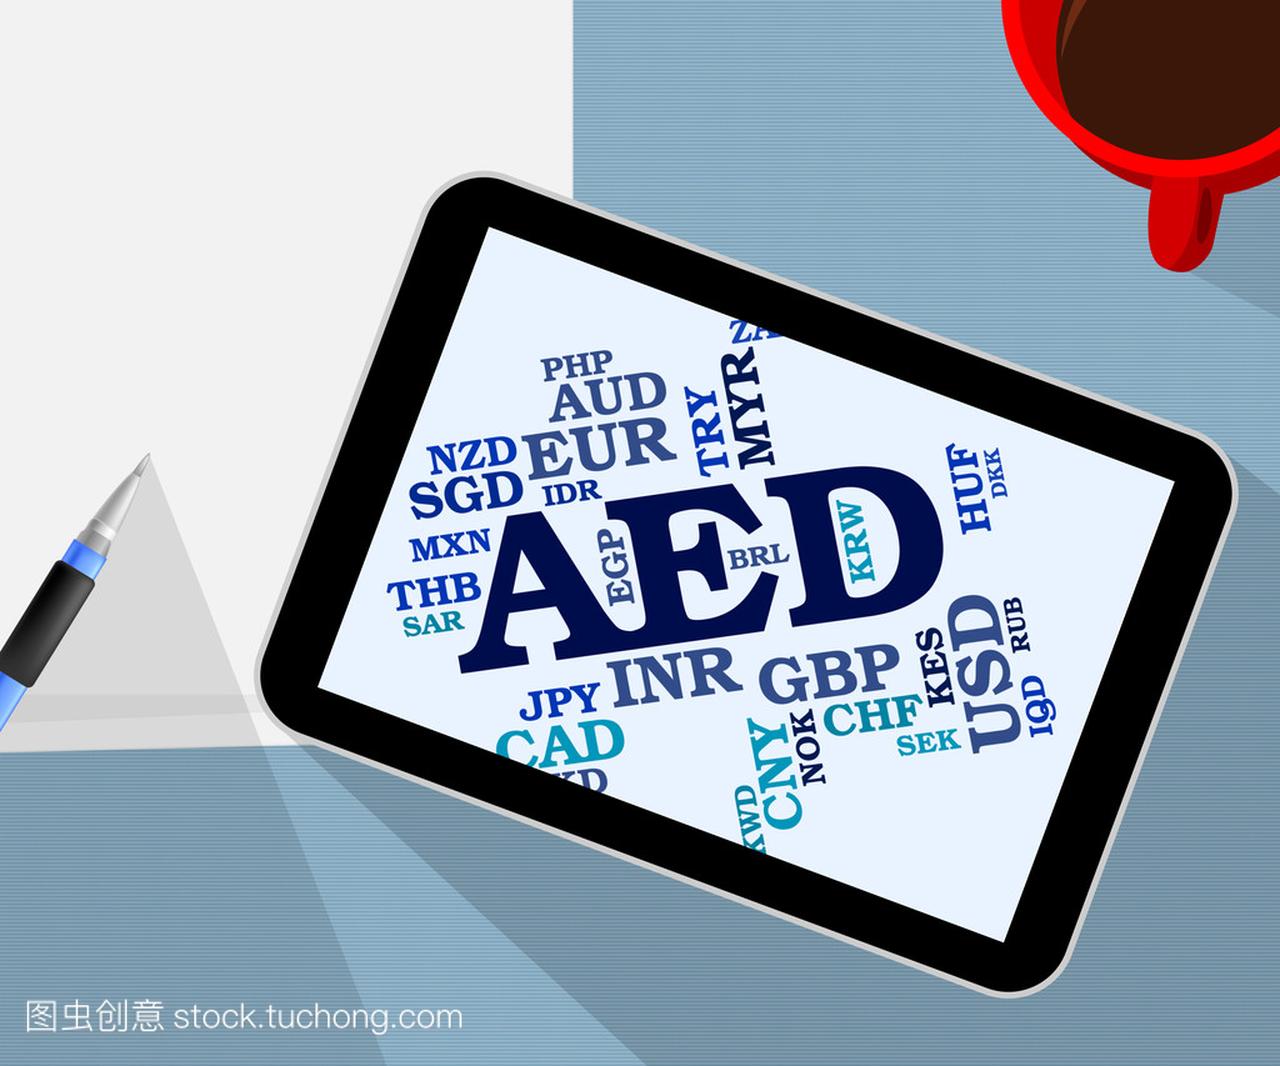 Aed 货币代表阿拉伯联合酋长国和造币